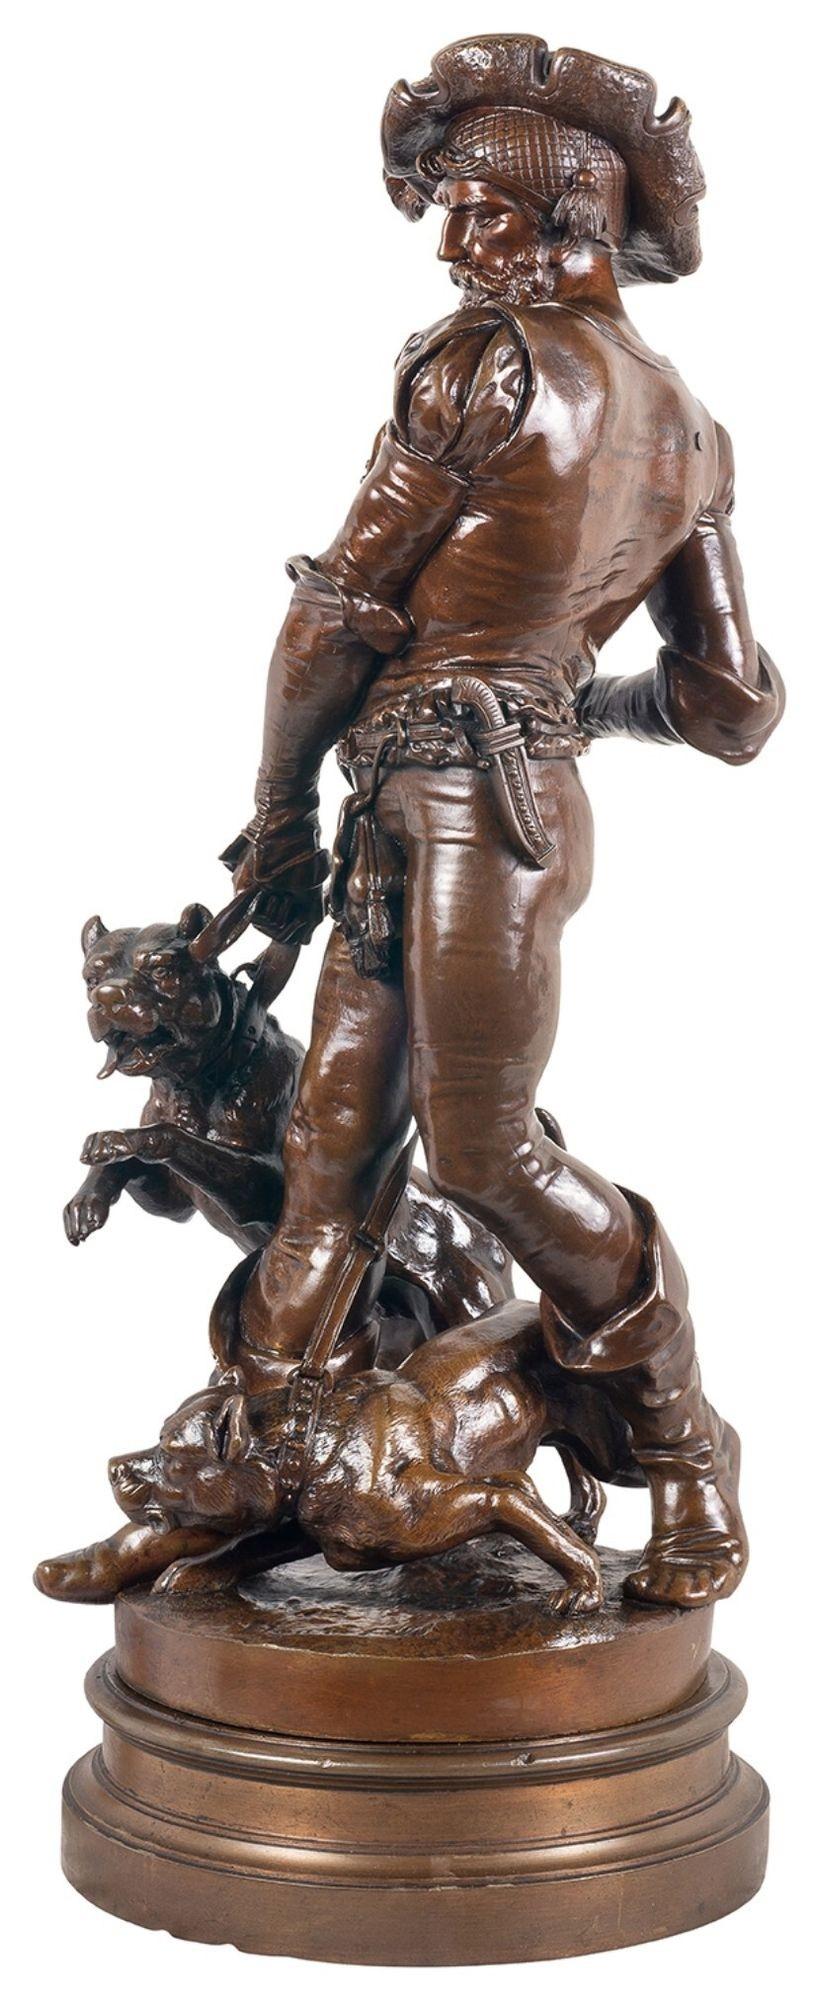 Eine sehr dramatische Bronzestatue, die einen Hundemann aus dem 19. Jahrhundert mit seinen beiden Hunden darstellt. Dreht sich auf einem Sockel aus Bronze. Henri Honoré Plé wurde am 8. März 1853 in Paris geboren. Er starb in der gleichen Stadt am